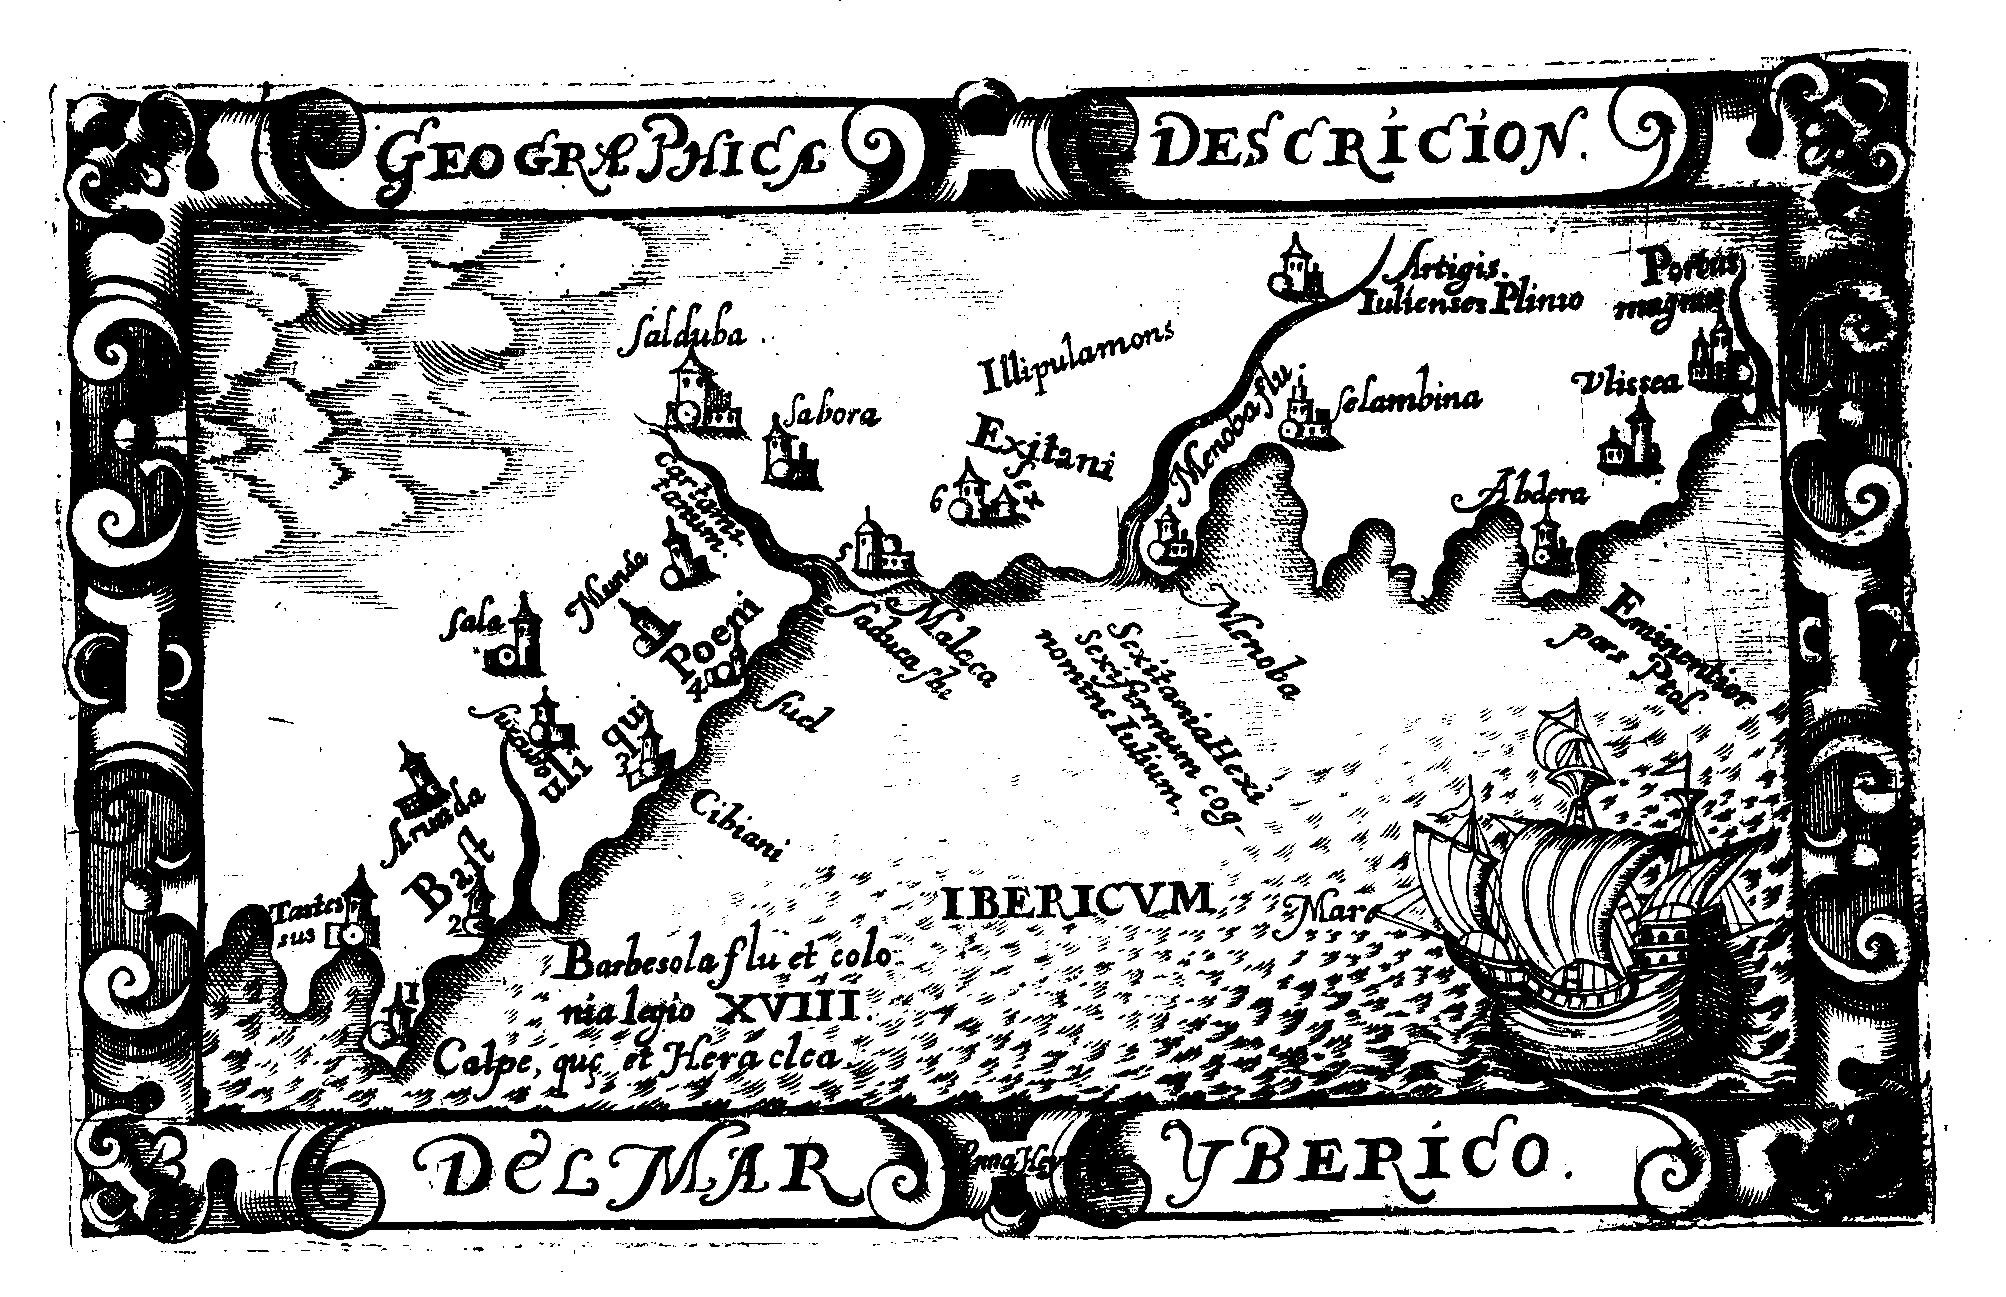 Geográfica descripción del Mar Ibérico